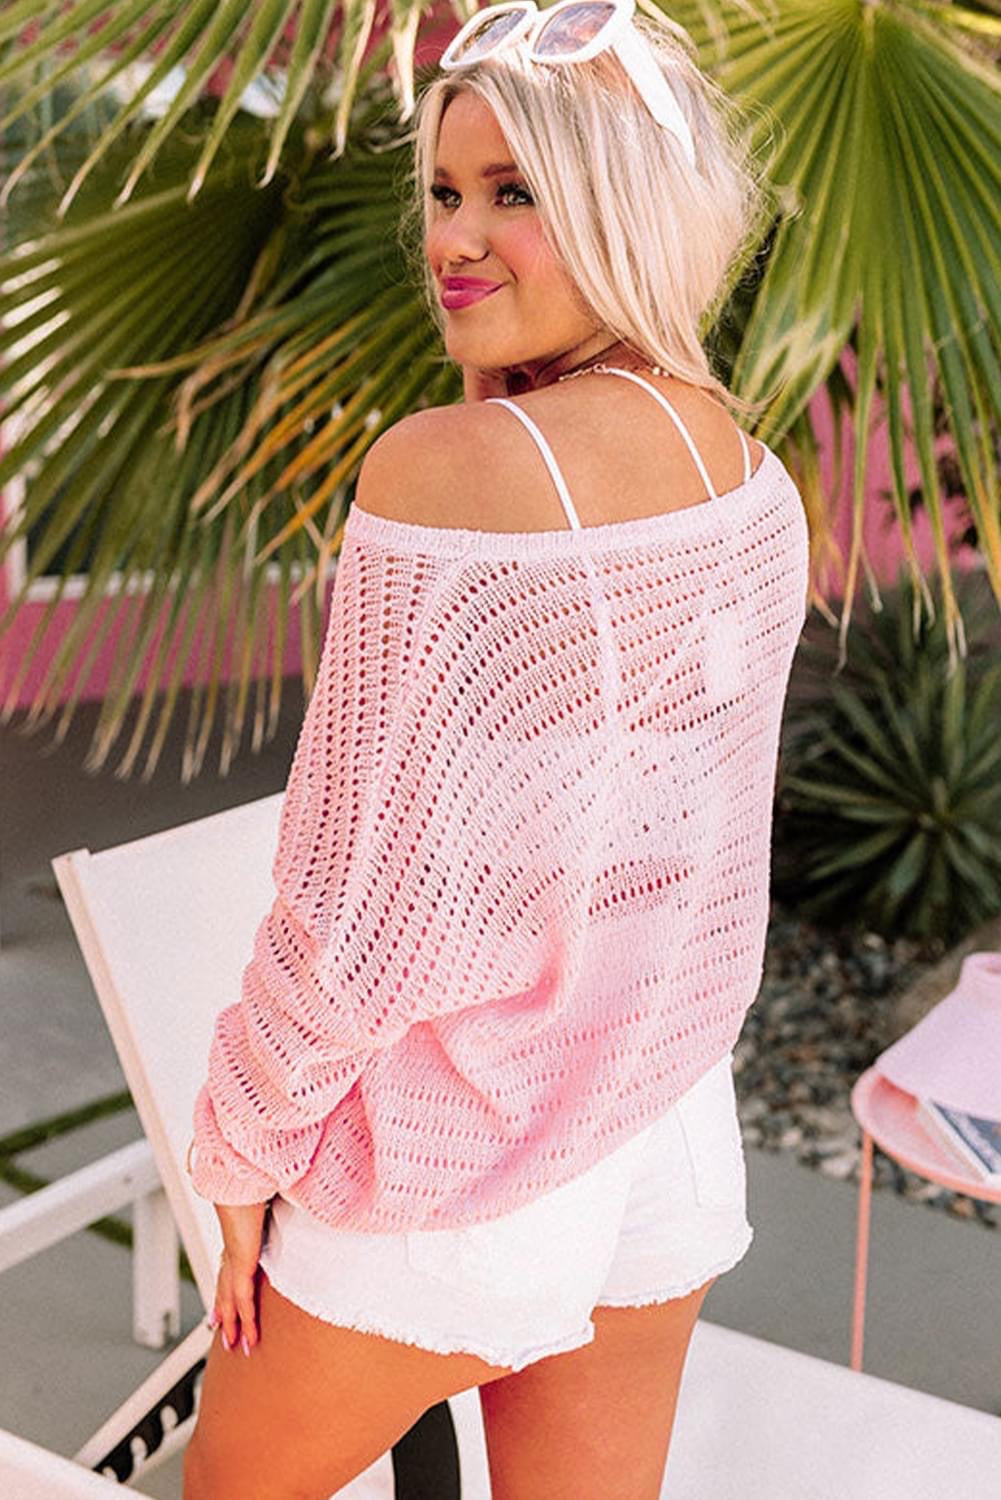 Soft Pink Crochet Top